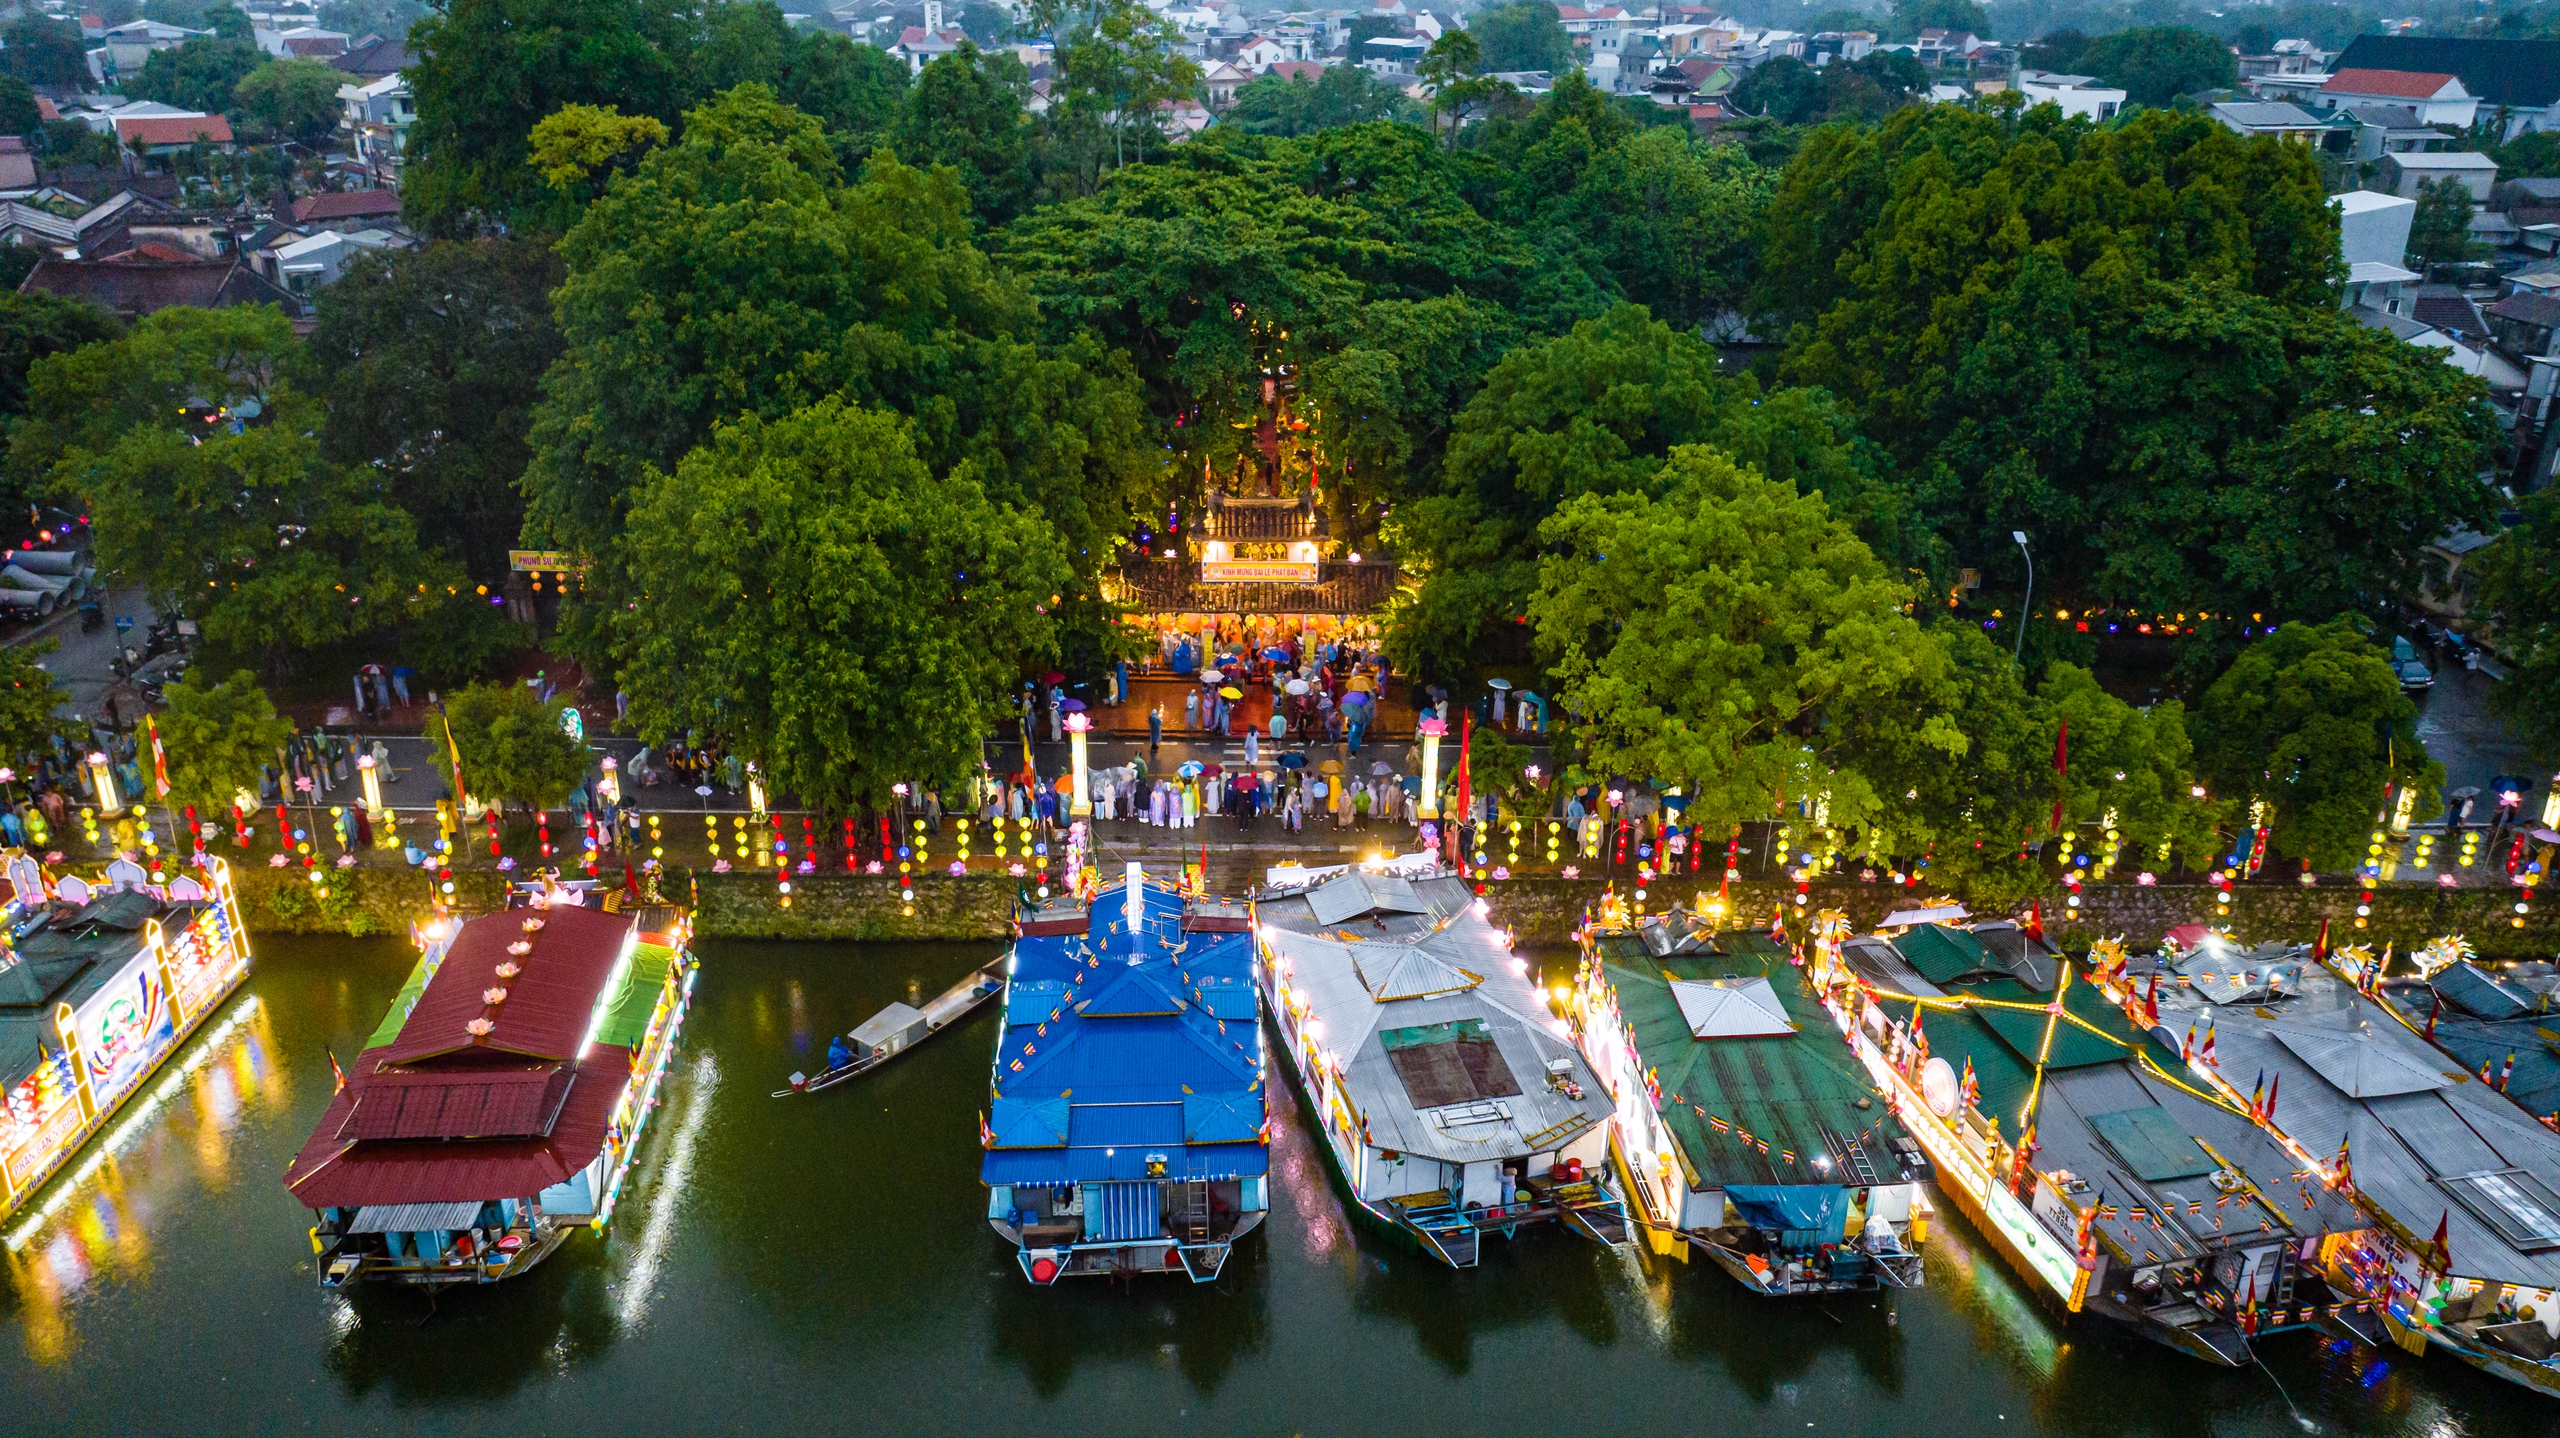 Từ sớm, 32 chiếc thuyền hoa đã tập trung tại sông Đông Ba, trước chùa Diệu Đế để chuẩn bị cho lễ diễu hành